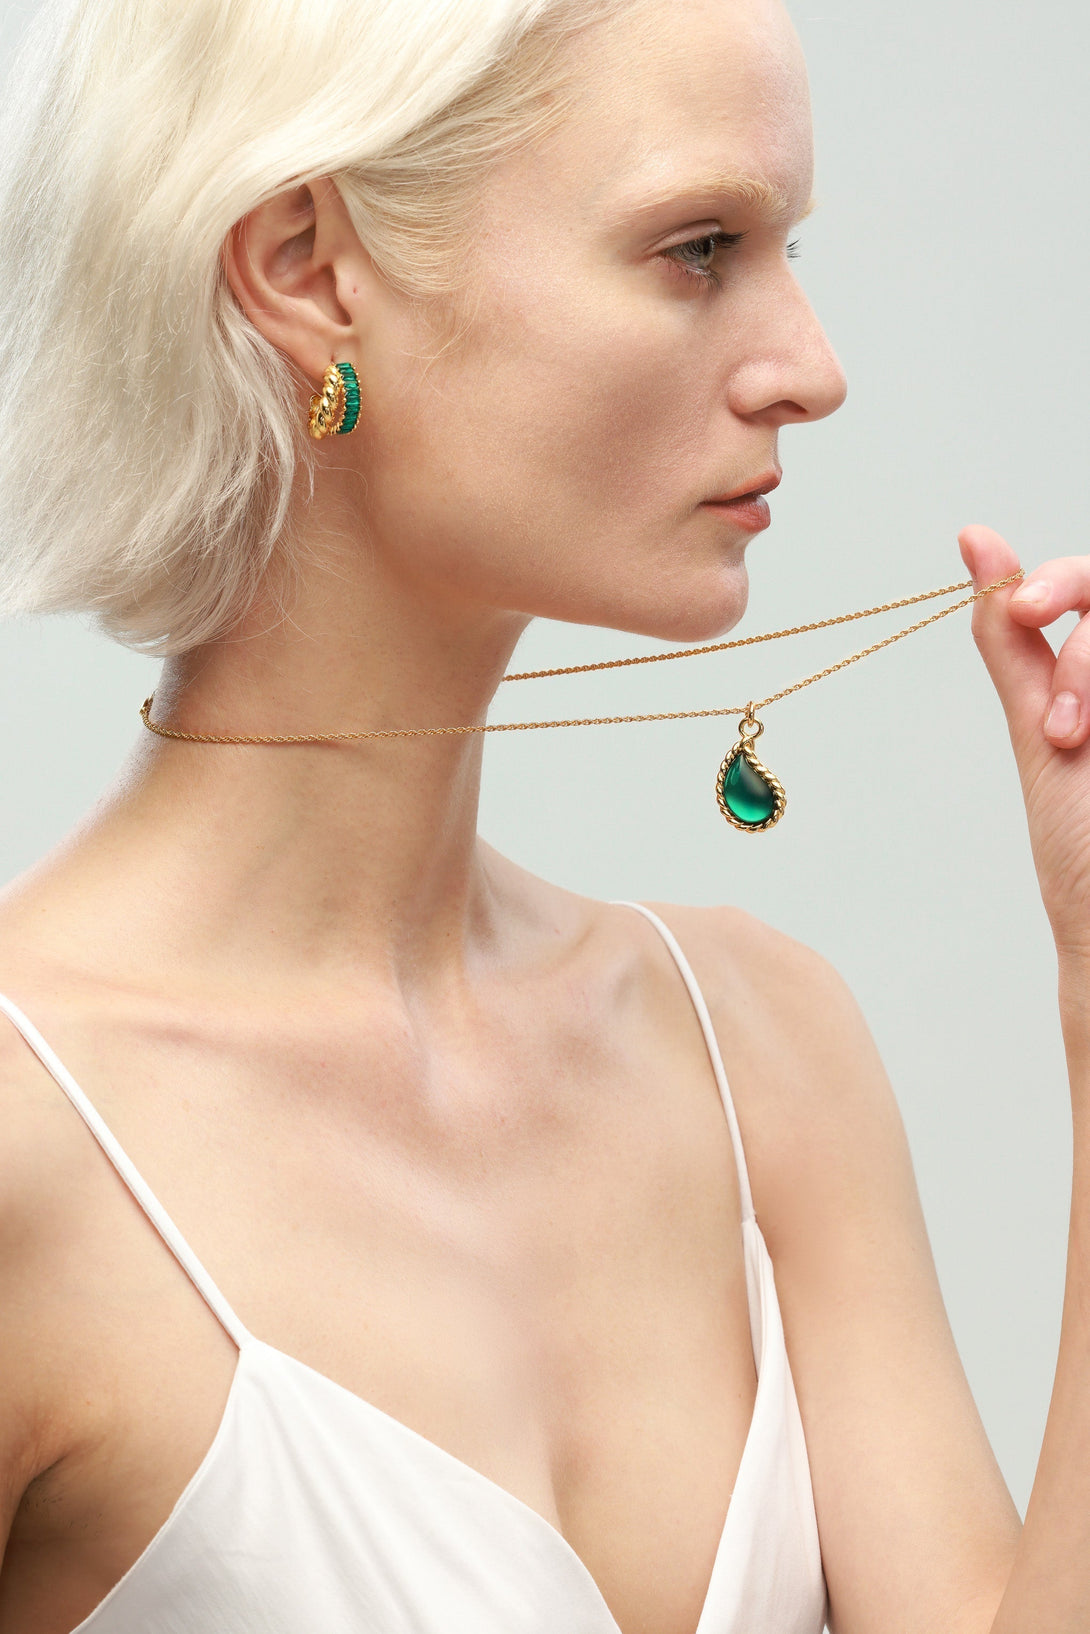 Gold Chain Drop Shape Emerald Pendant Necklace - Classicharms